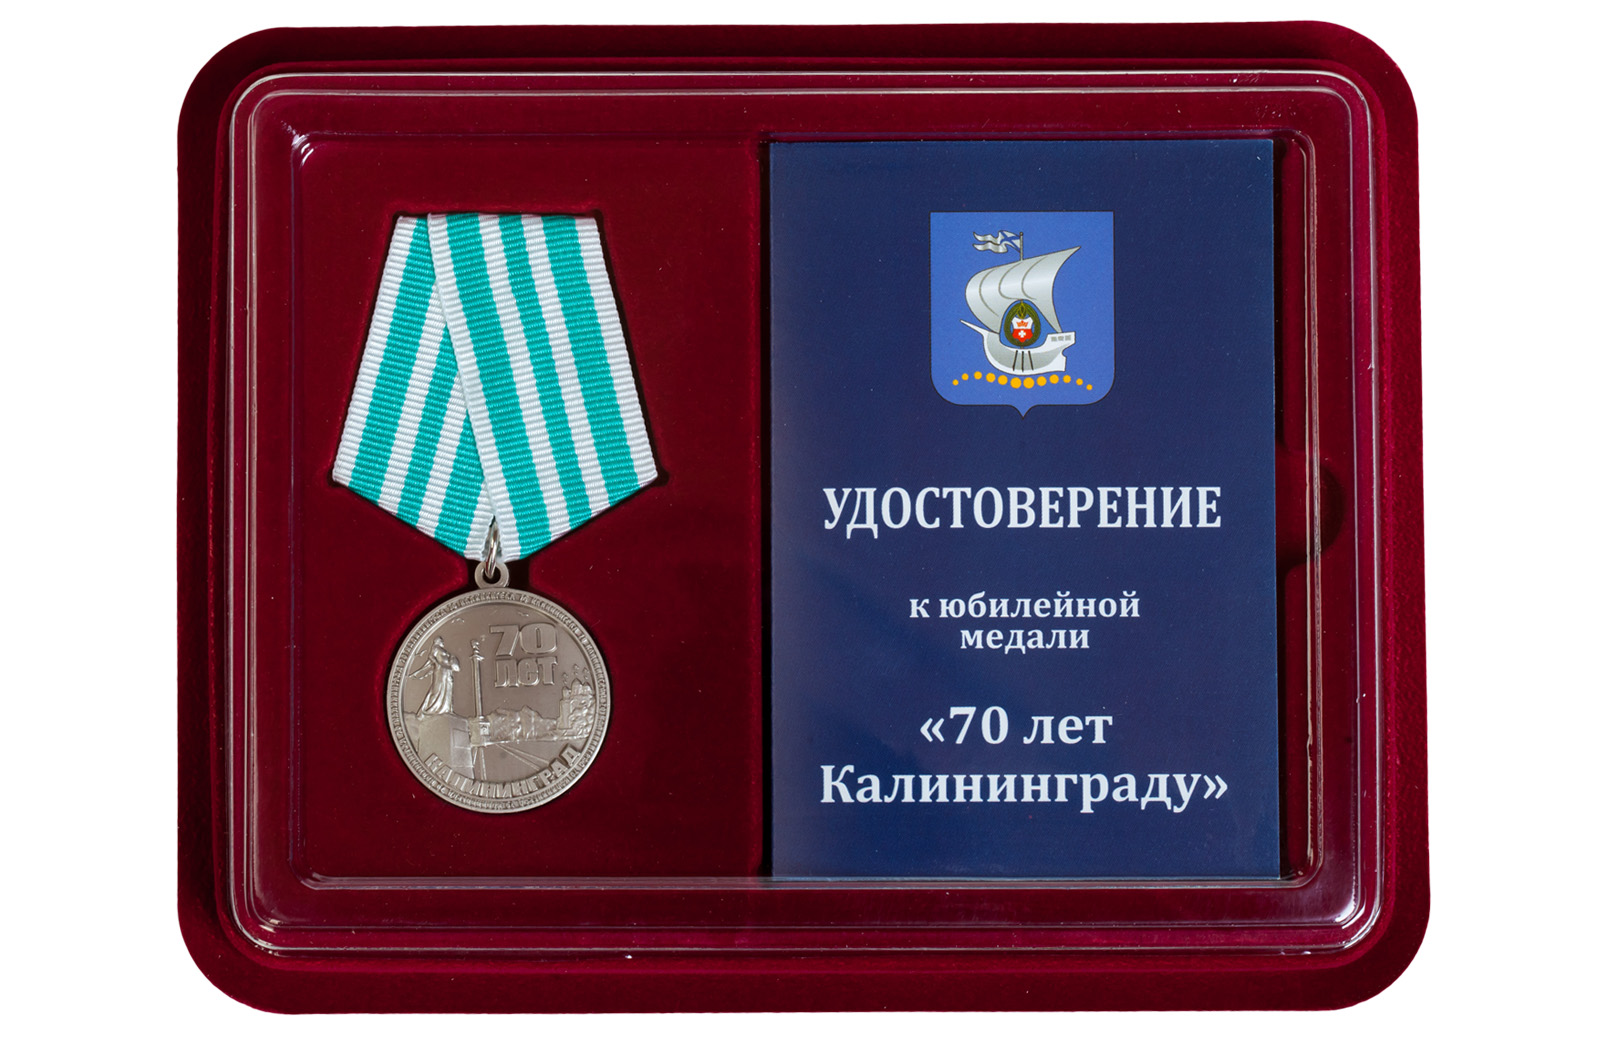 Купить памятную медаль 70 лет Калининграду в подарок